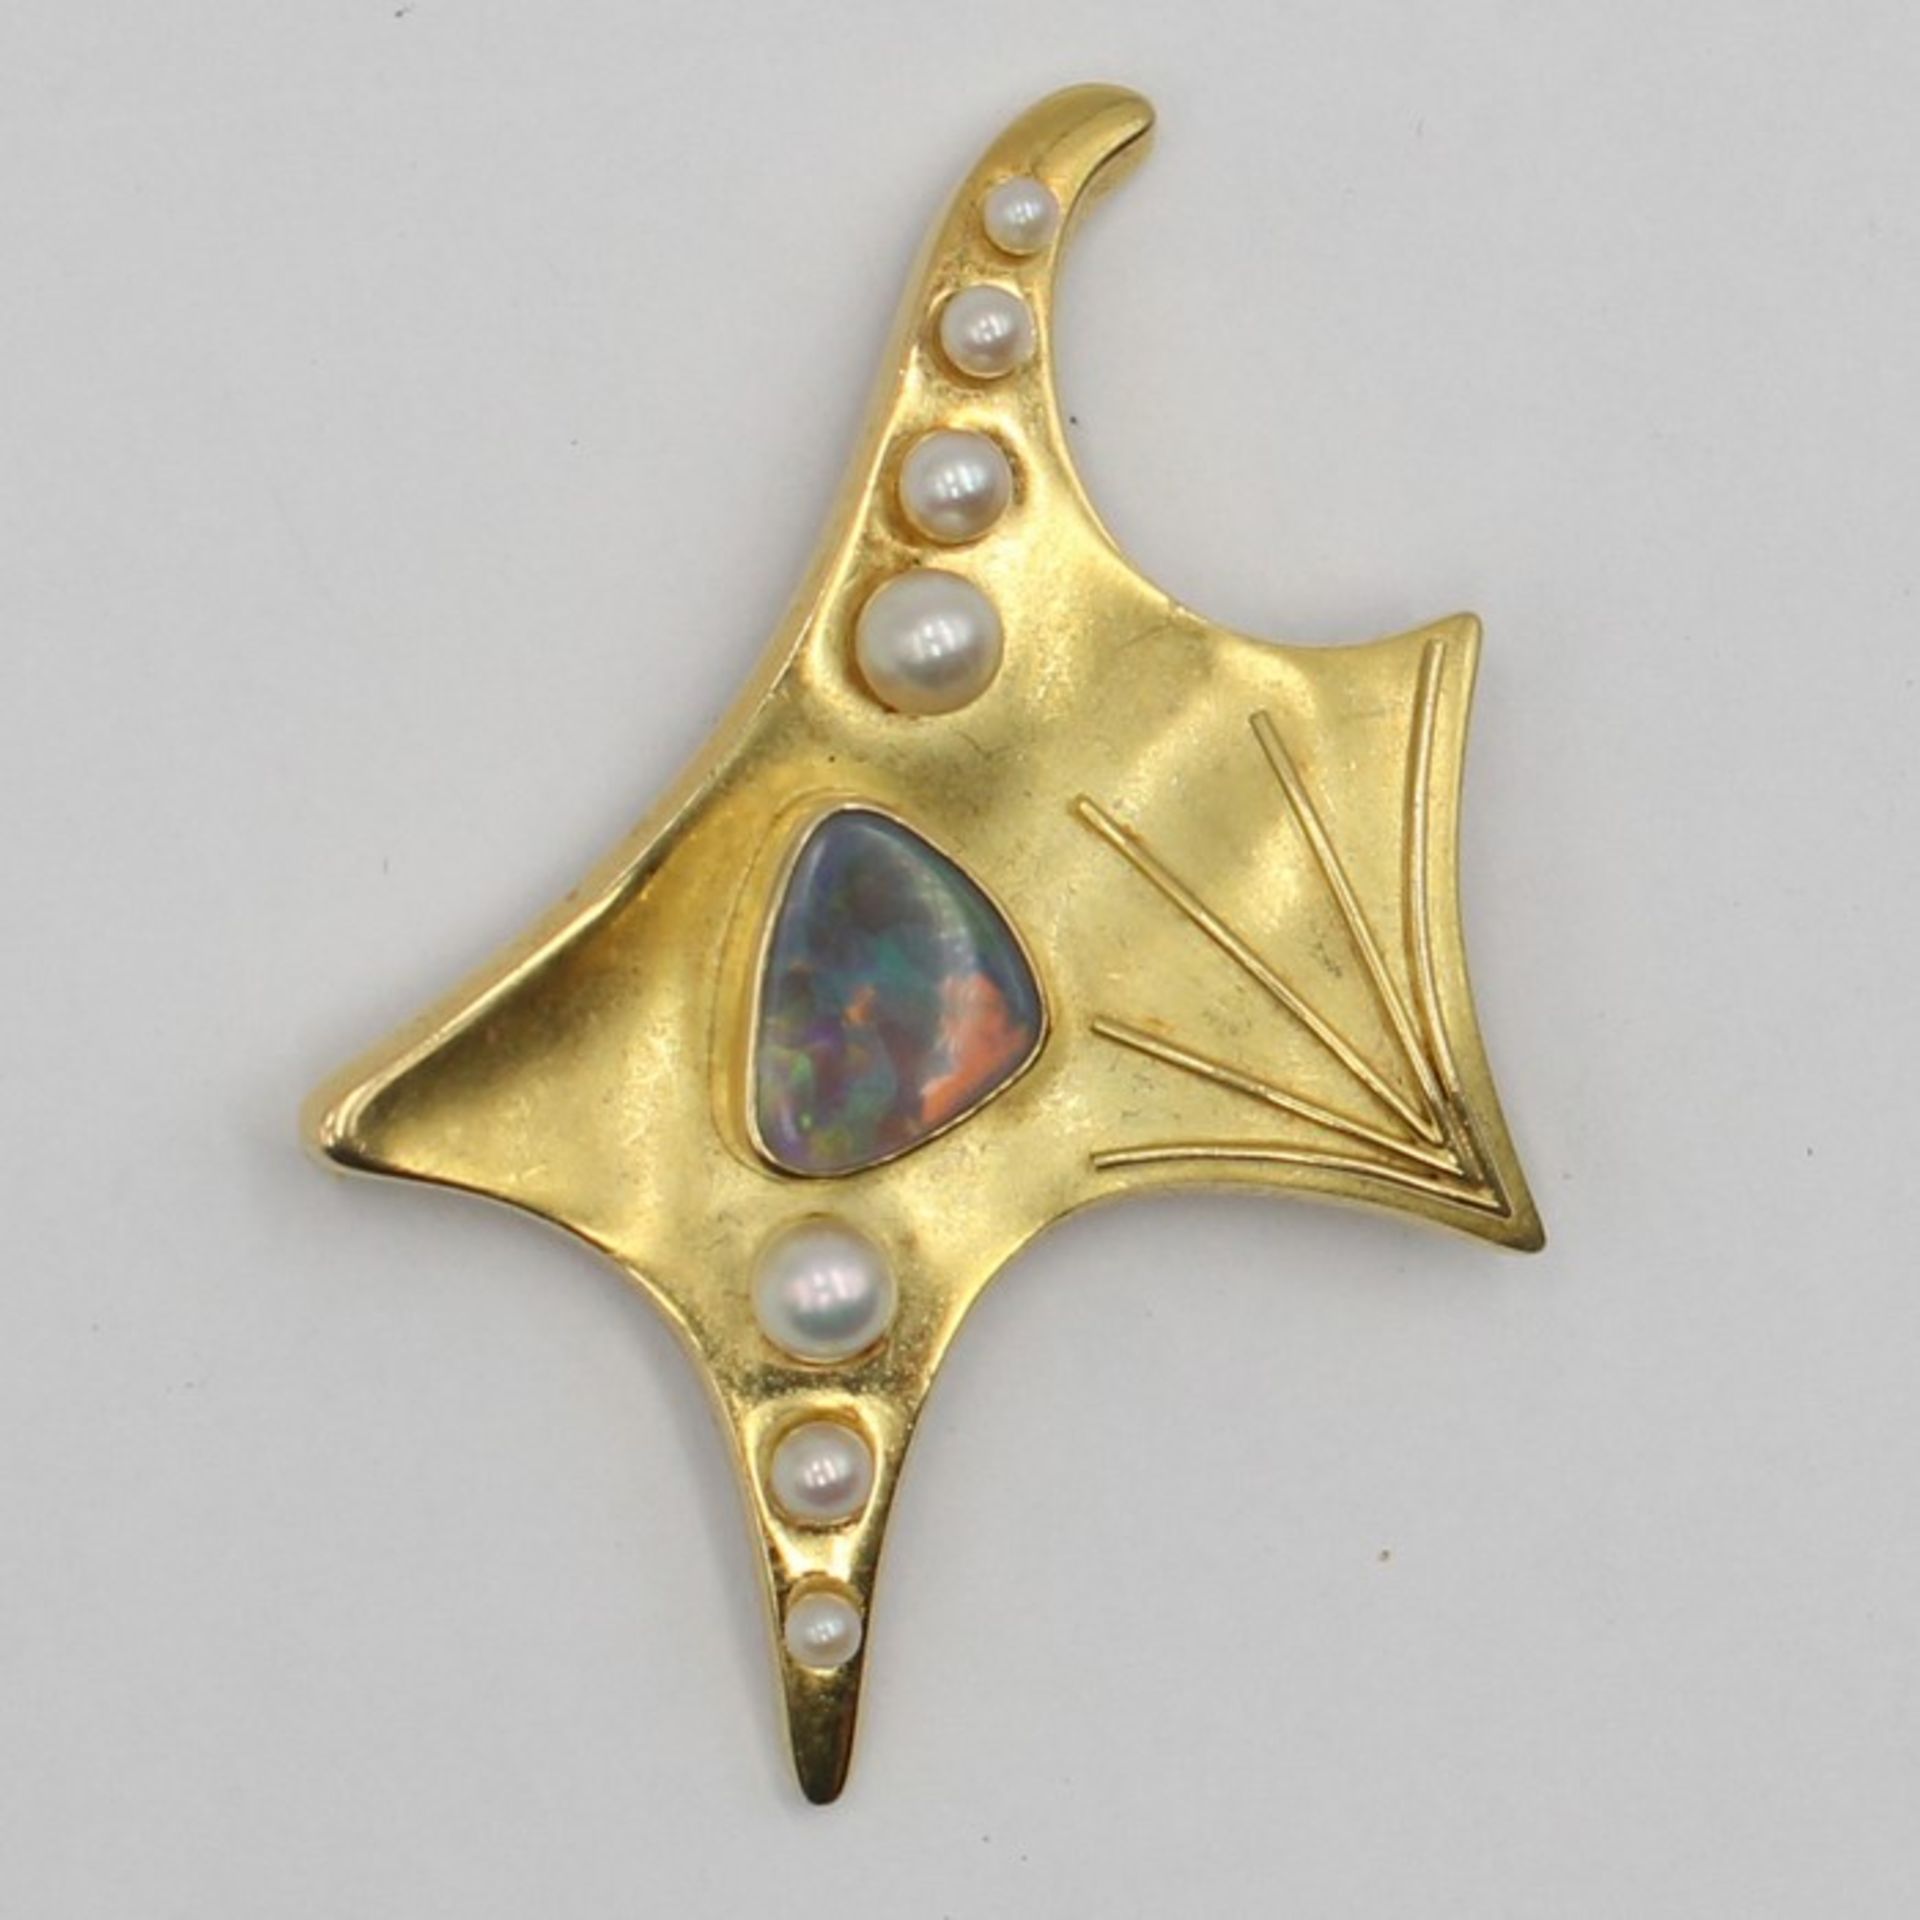 Perlen/Opal - BroscheGG 750, amorphe Form, satiniert, mit aufgesetztem Strahlendekor, mittig besetzt